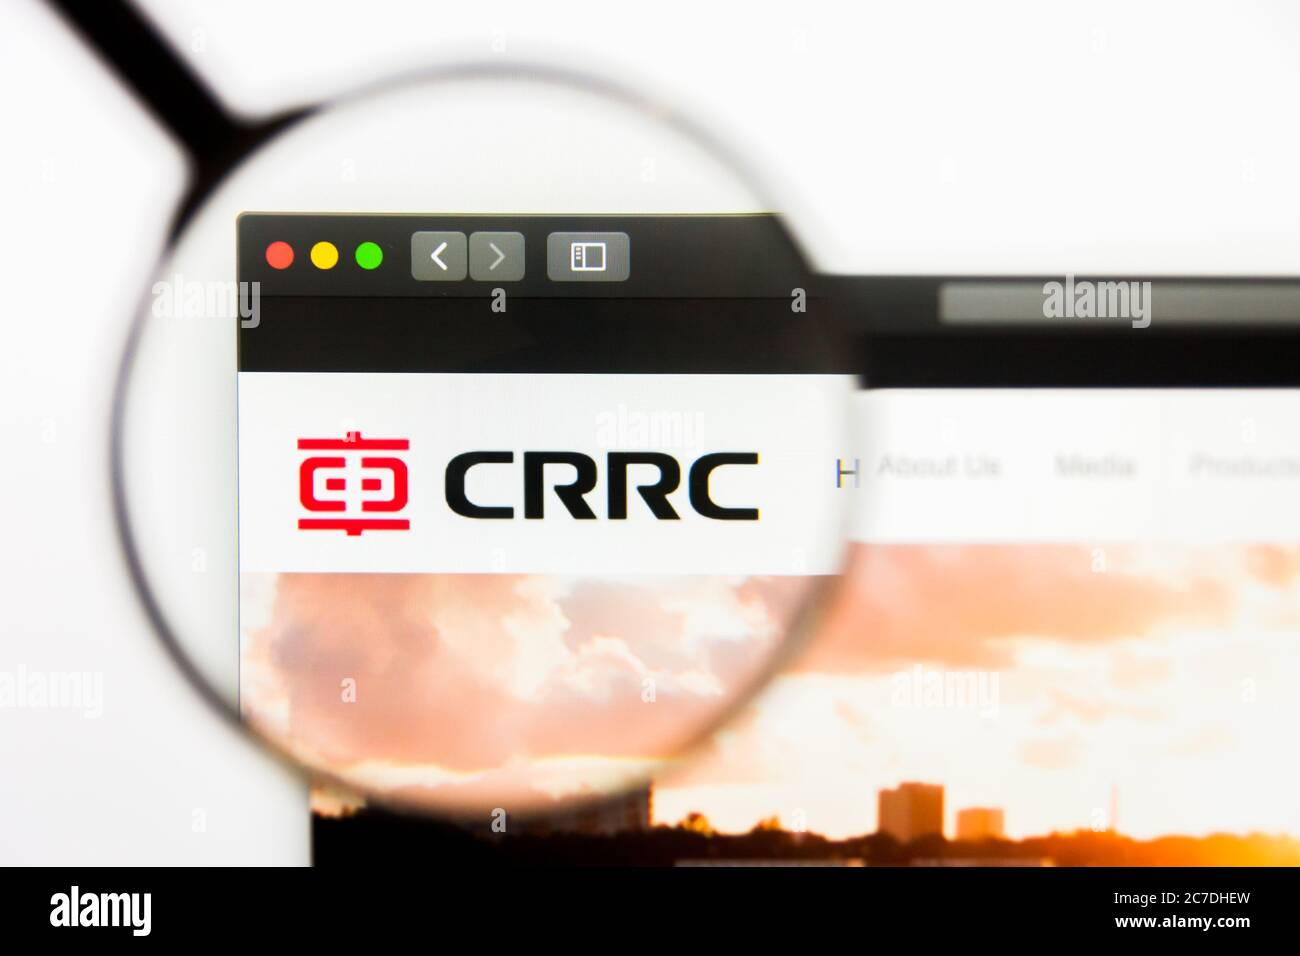 Los Angeles, California, USA - 13 Marzo 2019: Editoriale illustrativo, sito web CRRC. Logo CRRC visibile sullo schermo del display Foto Stock